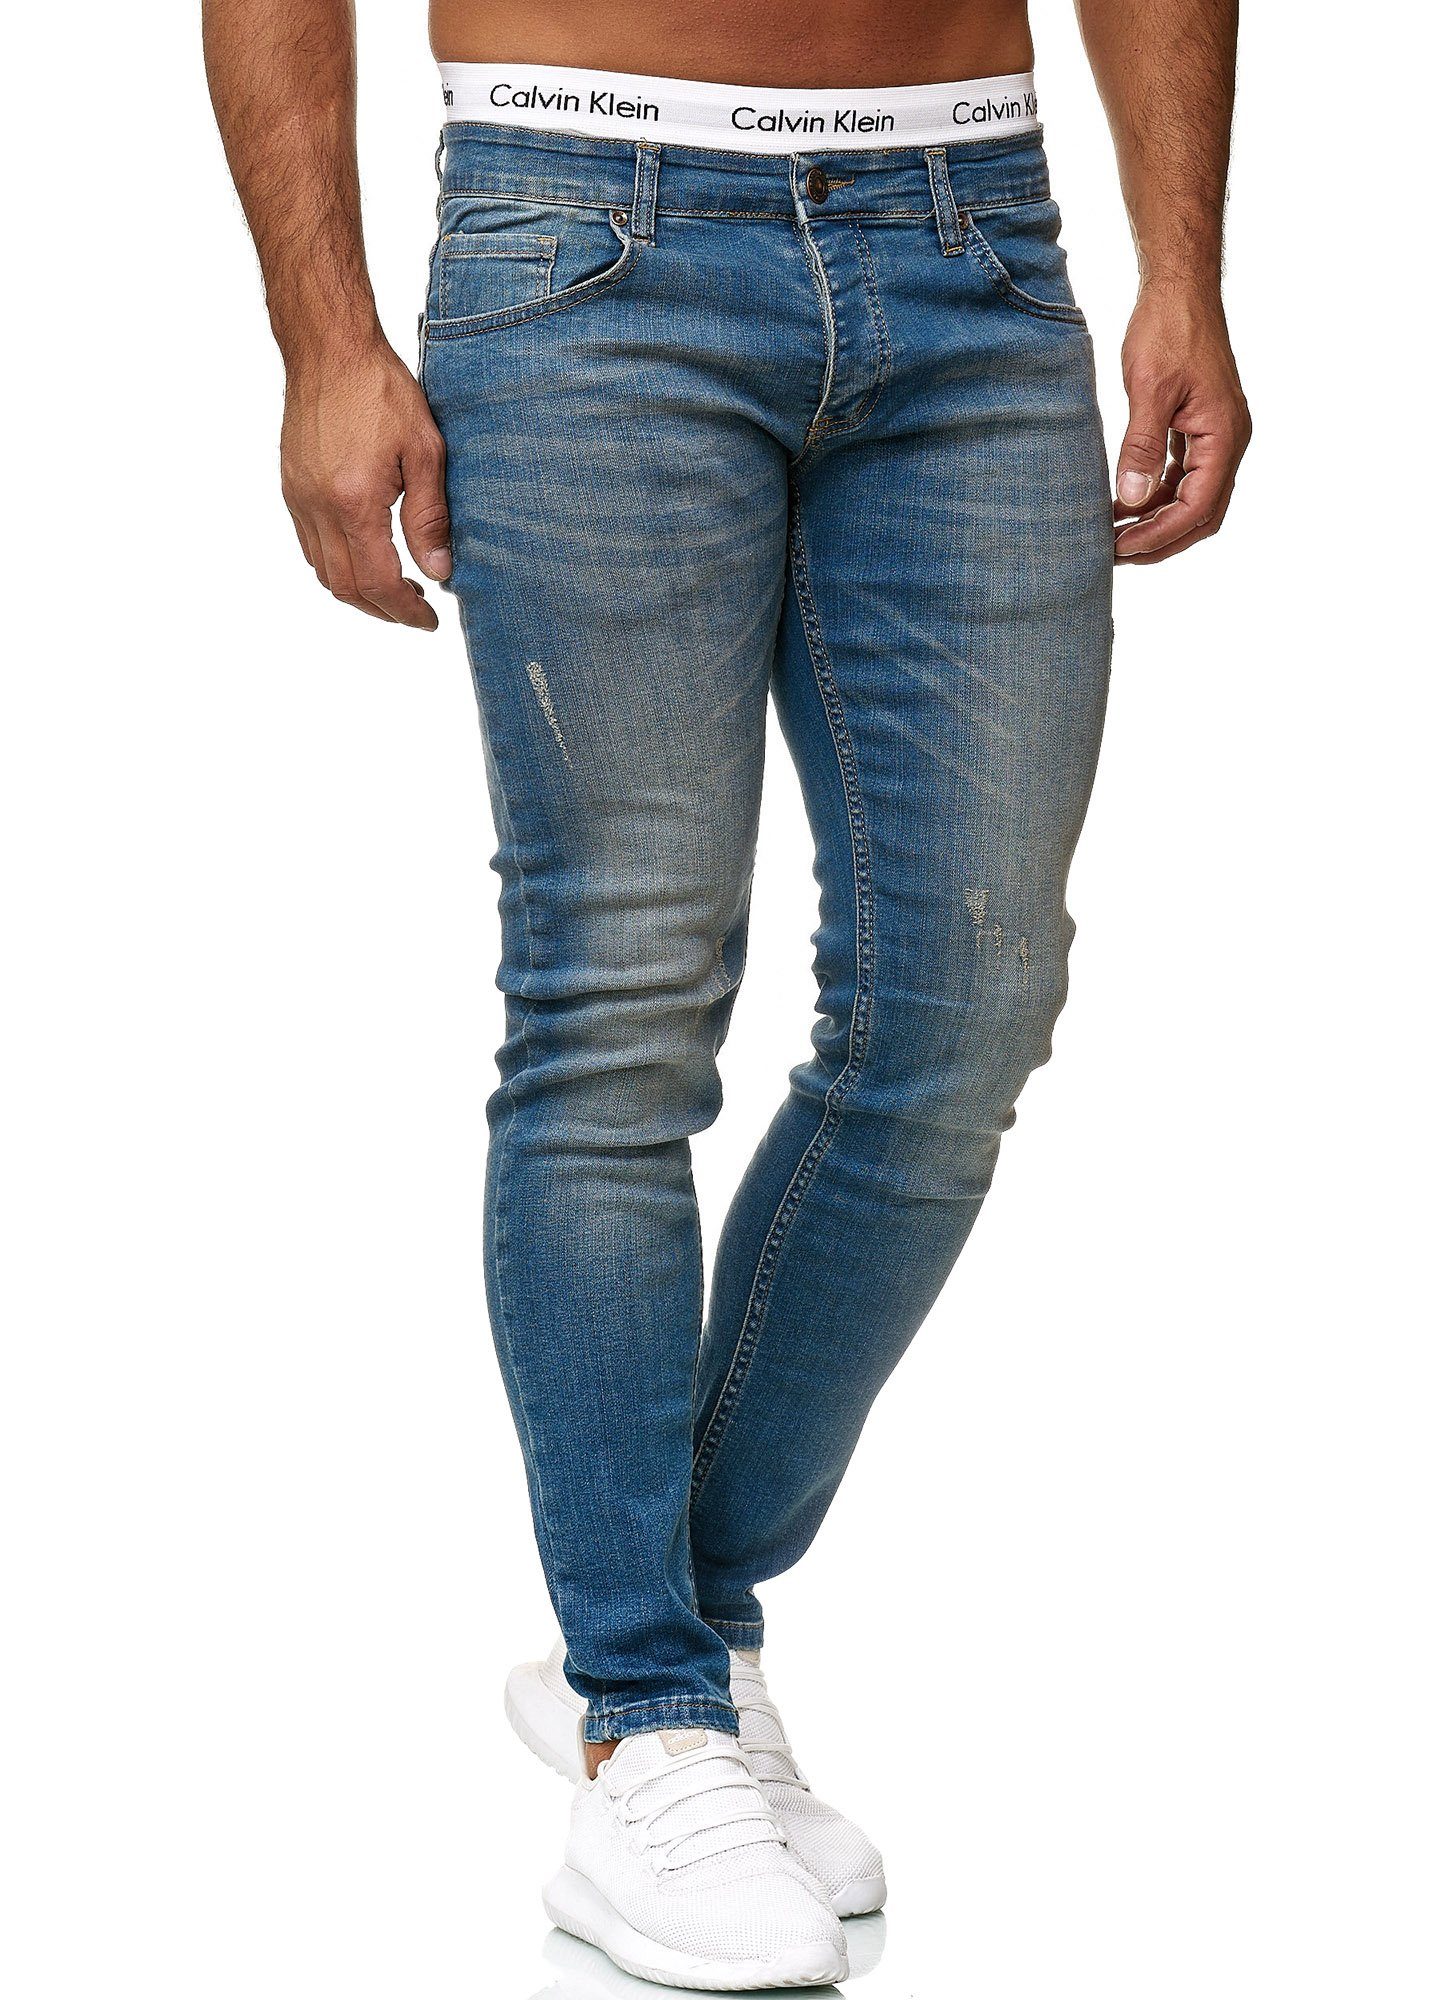 Code47 Skinny-fit-Jeans Code47 Designer Herren Jeans Hose Regular Skinny Fit Jeanshose Basic 613 Dirty Blue Used